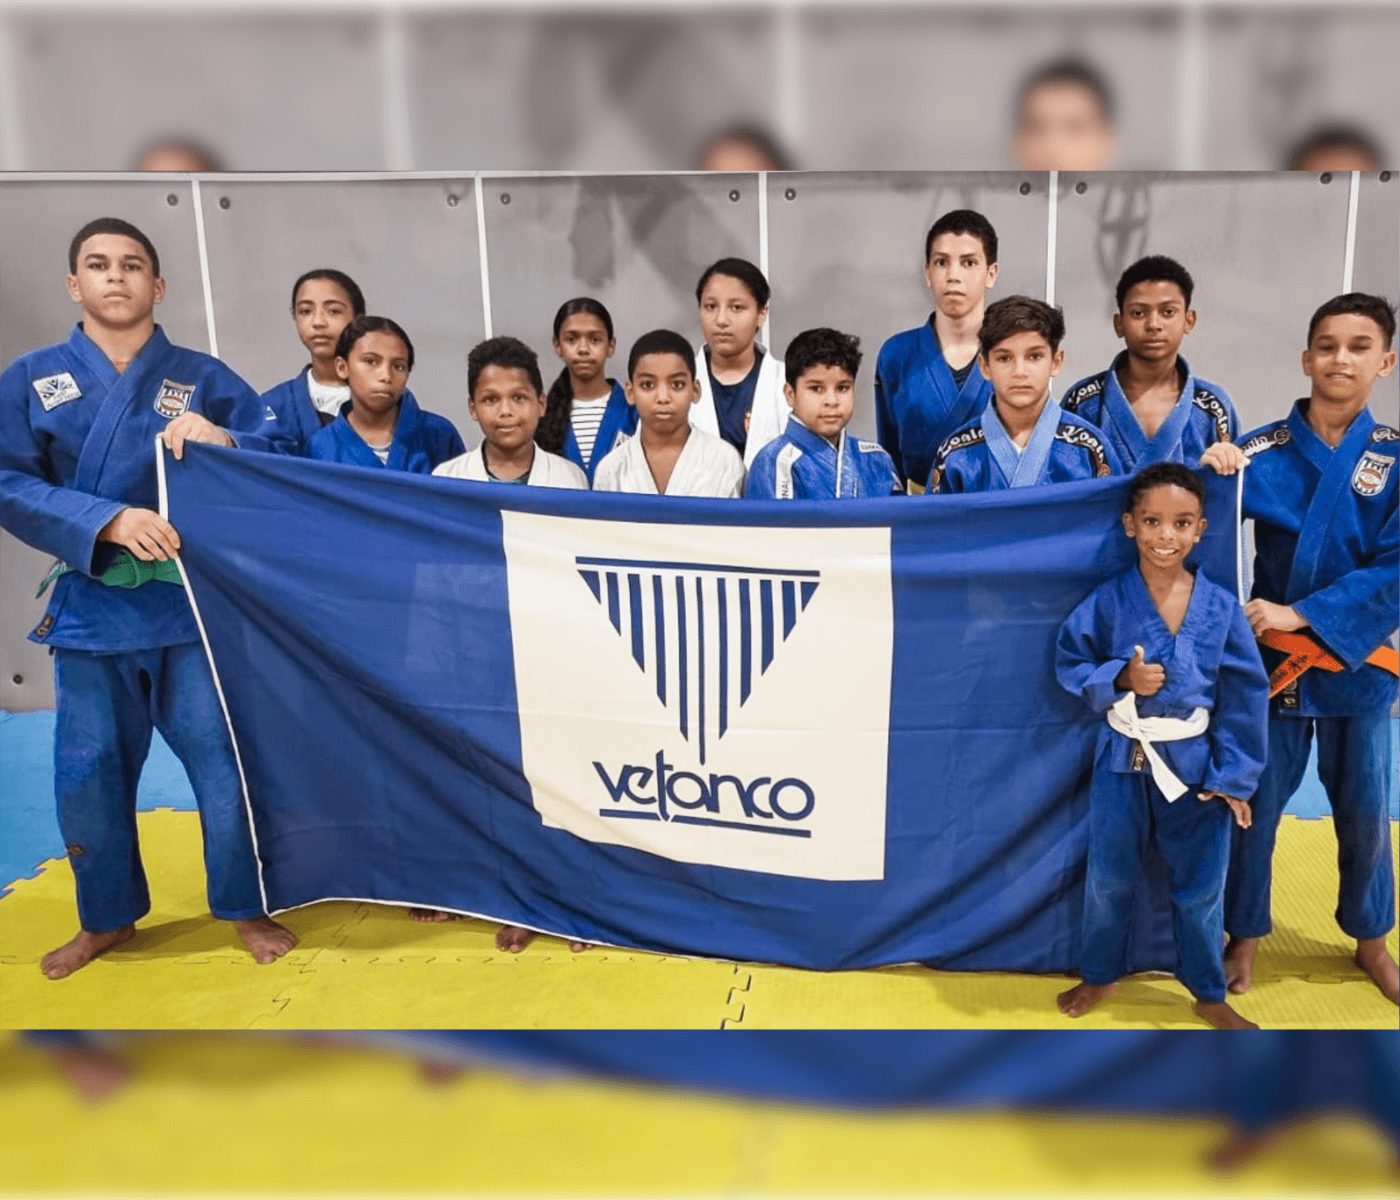 Vetanco Brasil apoia projeto de judô ‘DôArte’, ação social do Pernambuco